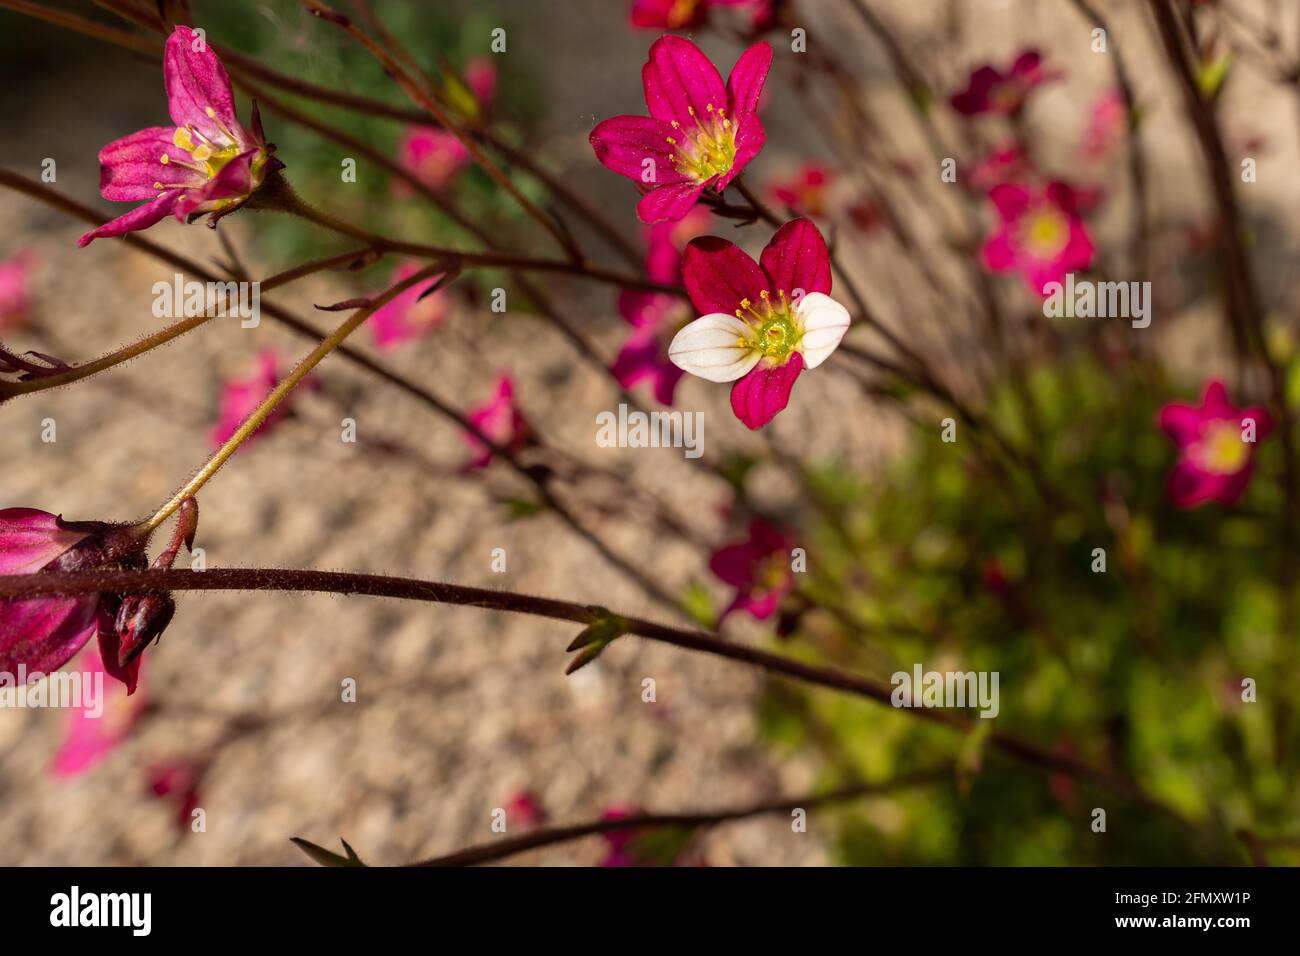 Saxifraga arendsii. Blühender Saxifraga mit genetischer Mutation im Steingarten. Steingarten mit kleinen hübschen rosa Blüten. Stockfoto